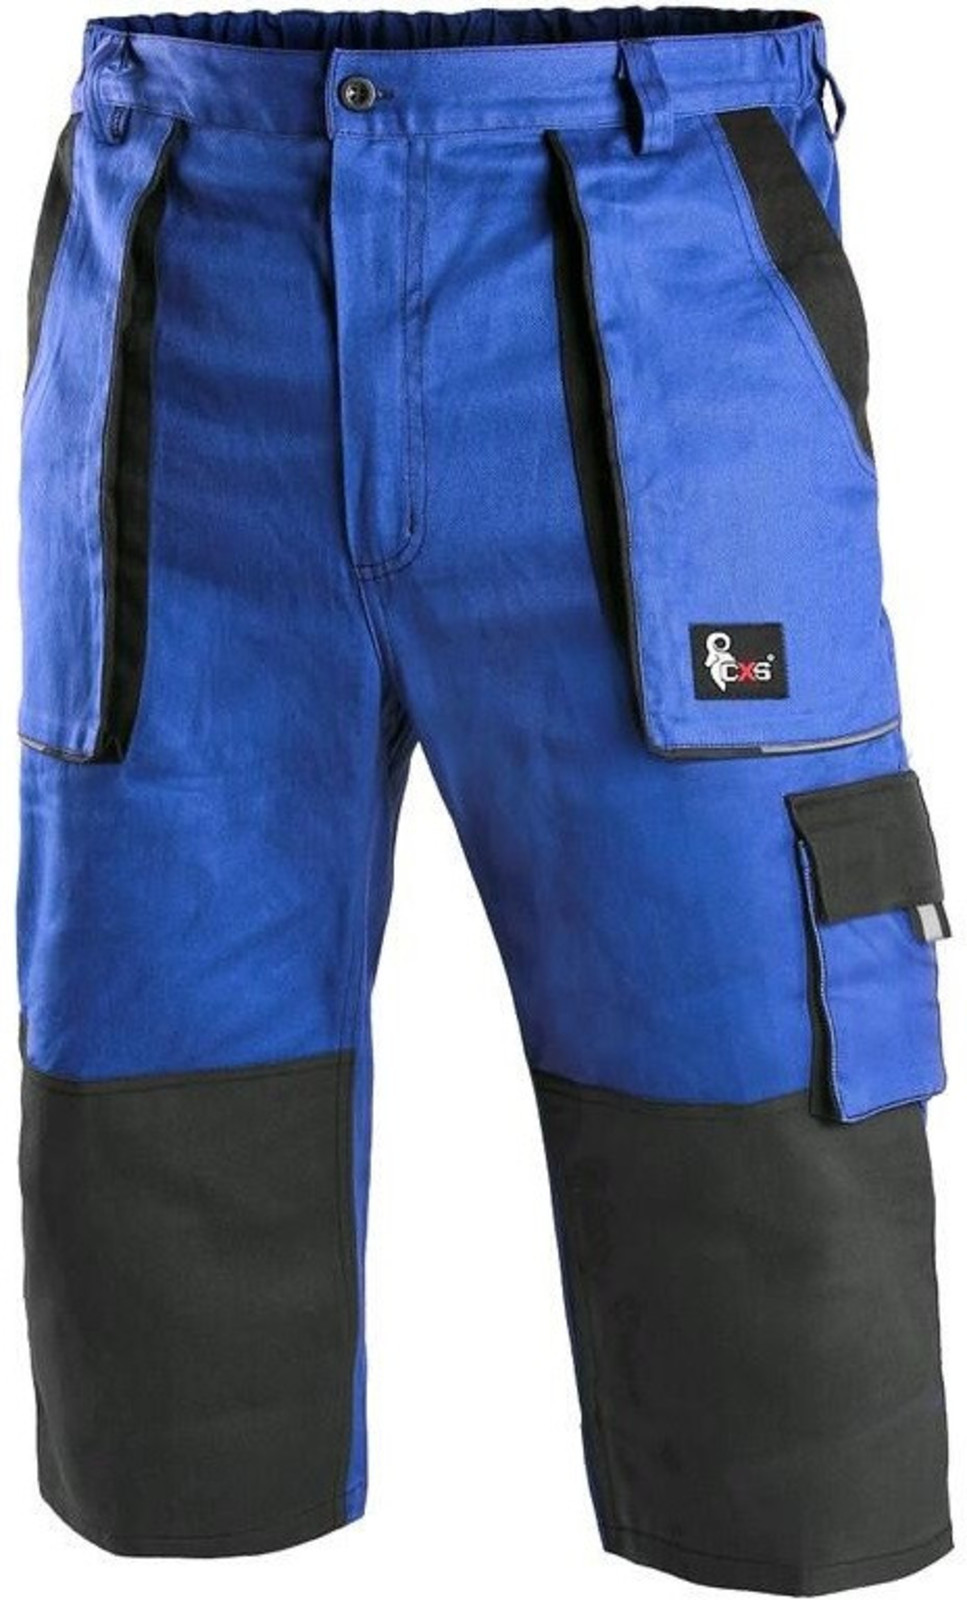 Pánske montérkové 3/4 nohavice CXS Luxy Patrik - veľkosť: 48, farba: modrá/čierna